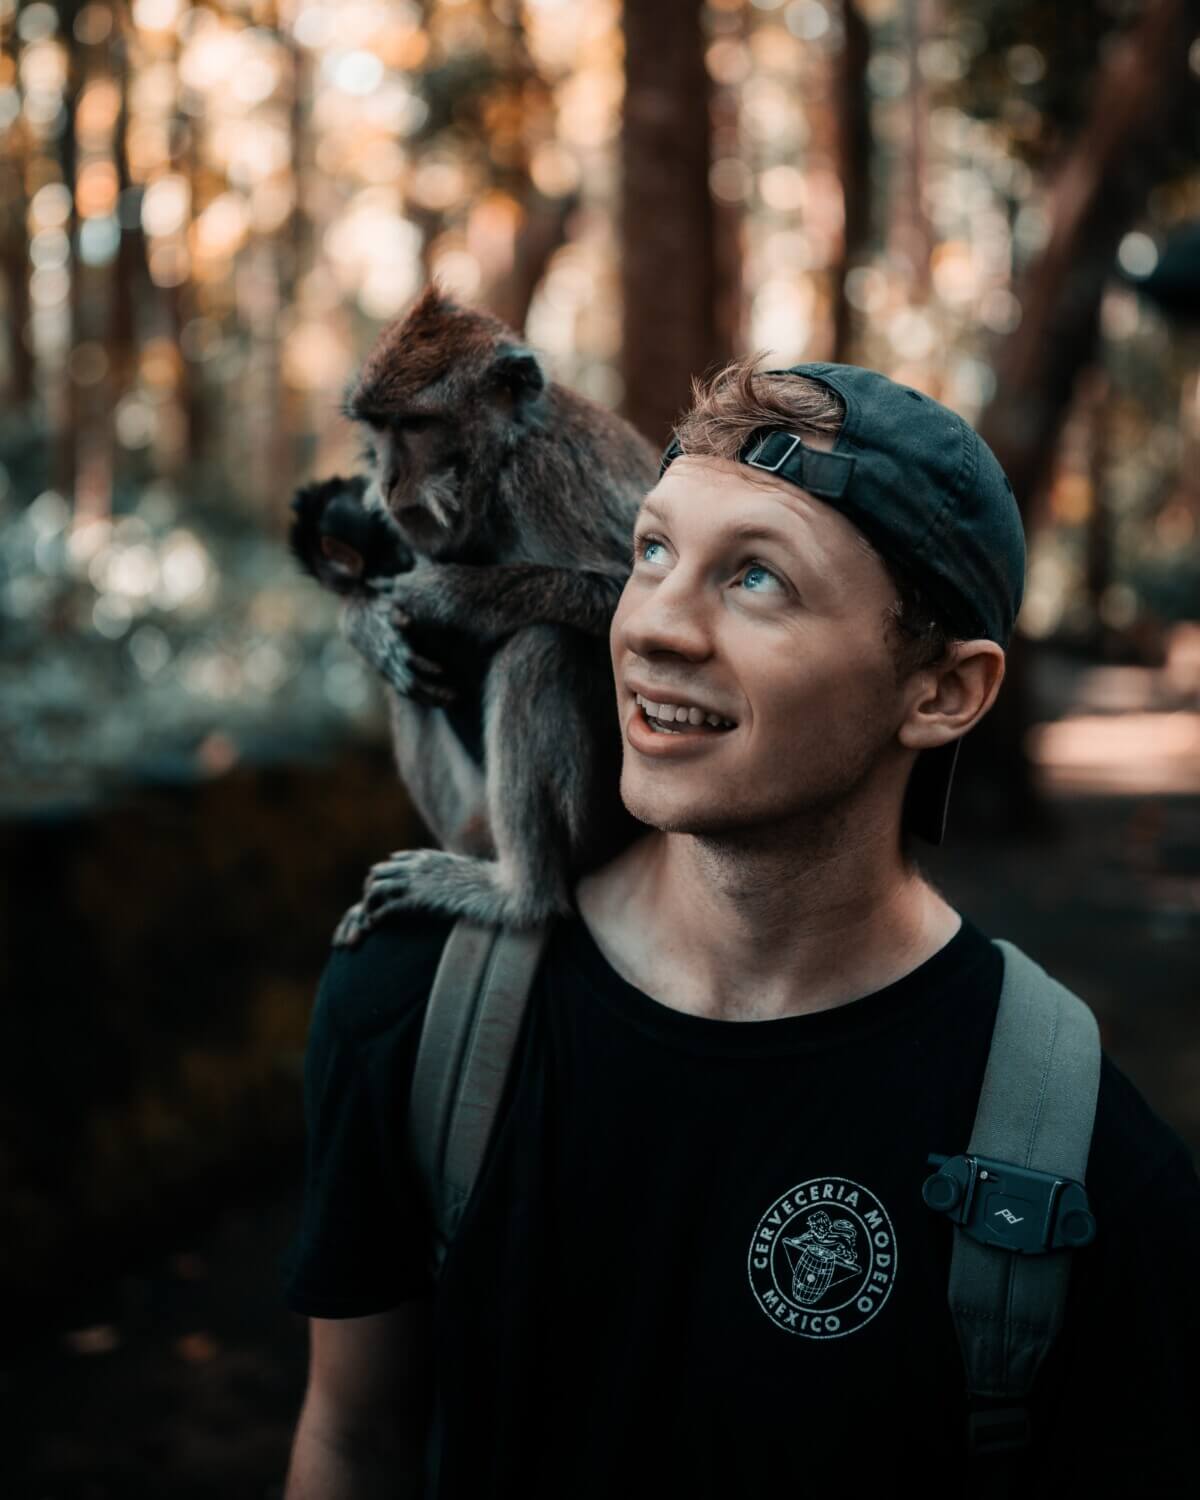 monkey on man's shoulder